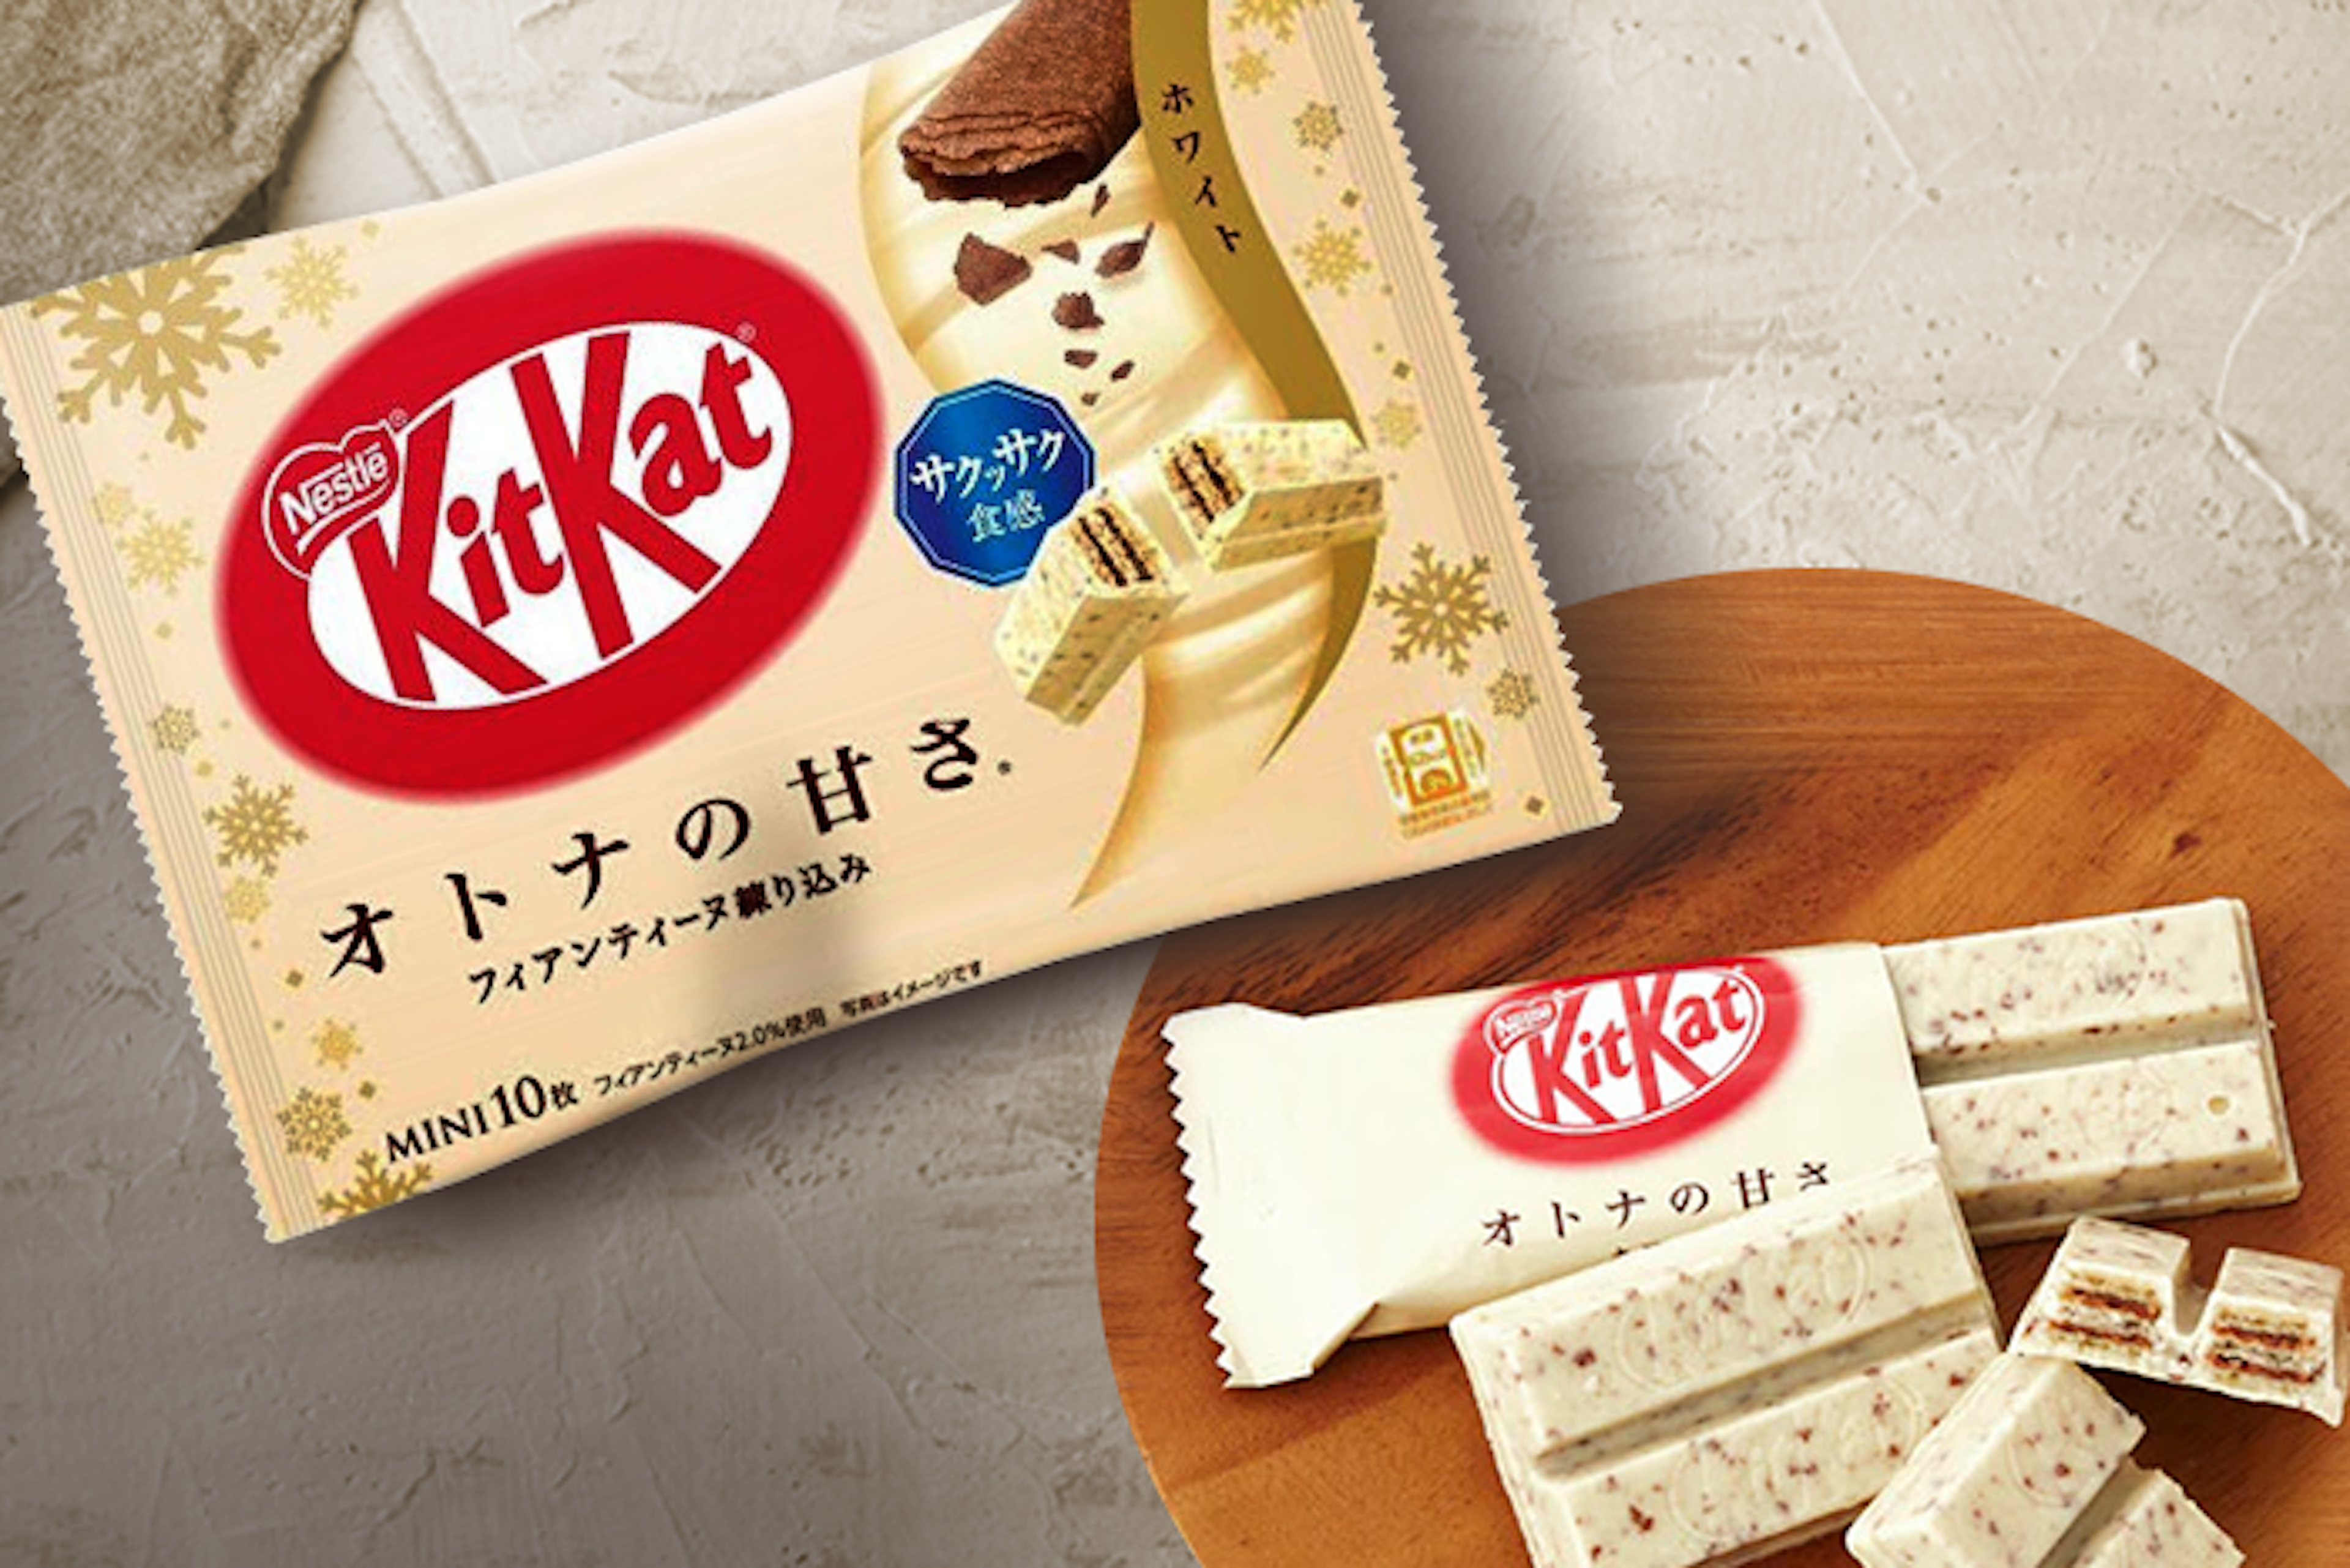 Einzelnes-Kitkat-Mini-Weiße-Schokolade-Stück-auf-weißem-Hintergrund-mit-sichtbarer-schmelzender-Schokoladenschicht-und-Waffelstruktur